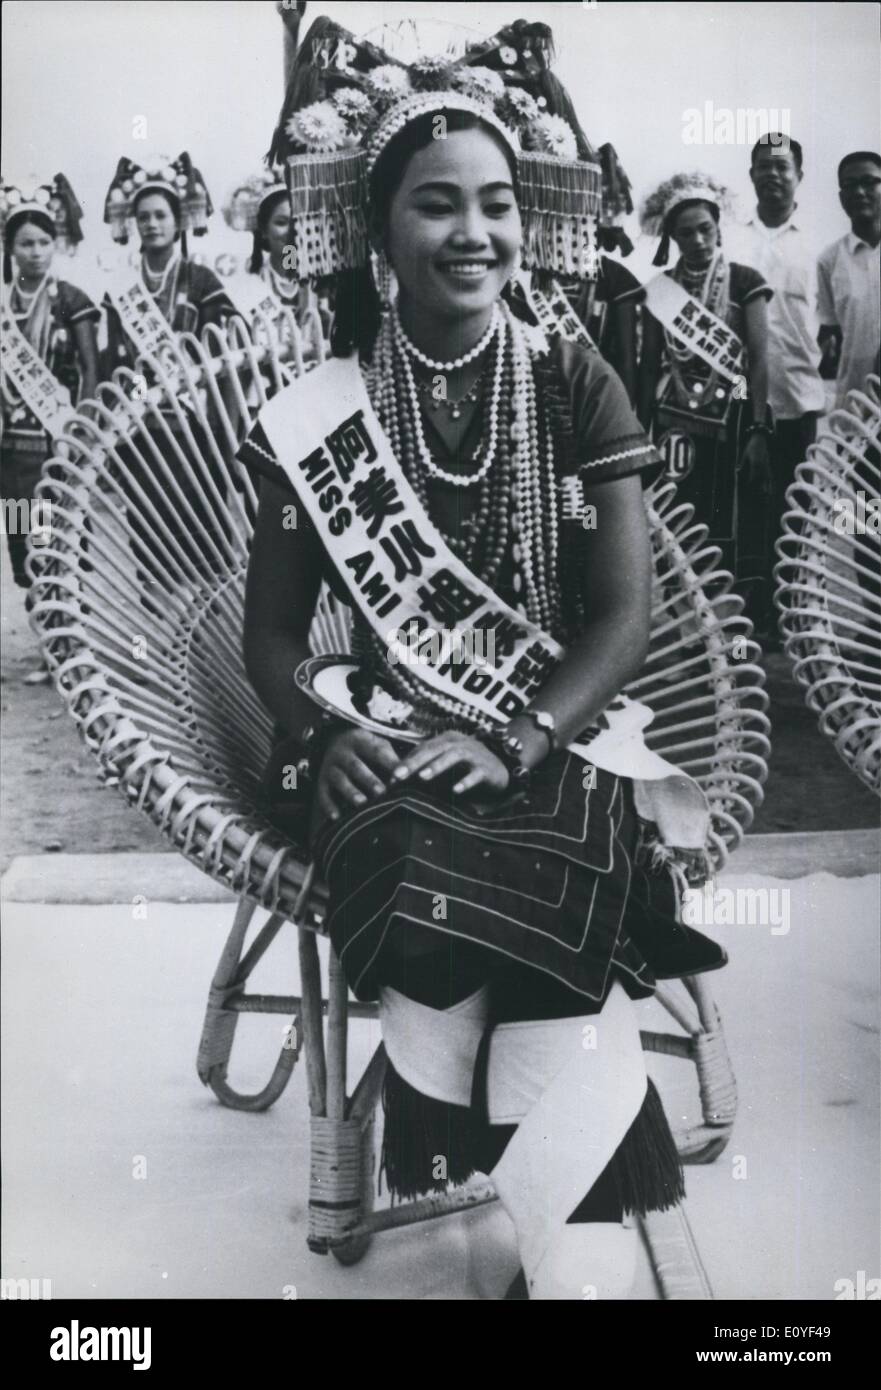 Il 1 gennaio, 1970 - aborigeni regina di bellezza.: l'Ami aborigeno tribù in Hulaien, orientale di Taiwan ha scelto piuttosto Shu Yueh-yuan come loro ''regina'', durante il loro festival di Bumoer raccolto. L'Ami hanno una popolazione di 70.000 e una storia di circa 700 anni. La foto mostra il Ami della tribù di frist beauty queen , Shu Yueh-yuen nel suo abito tribale. Foto Stock